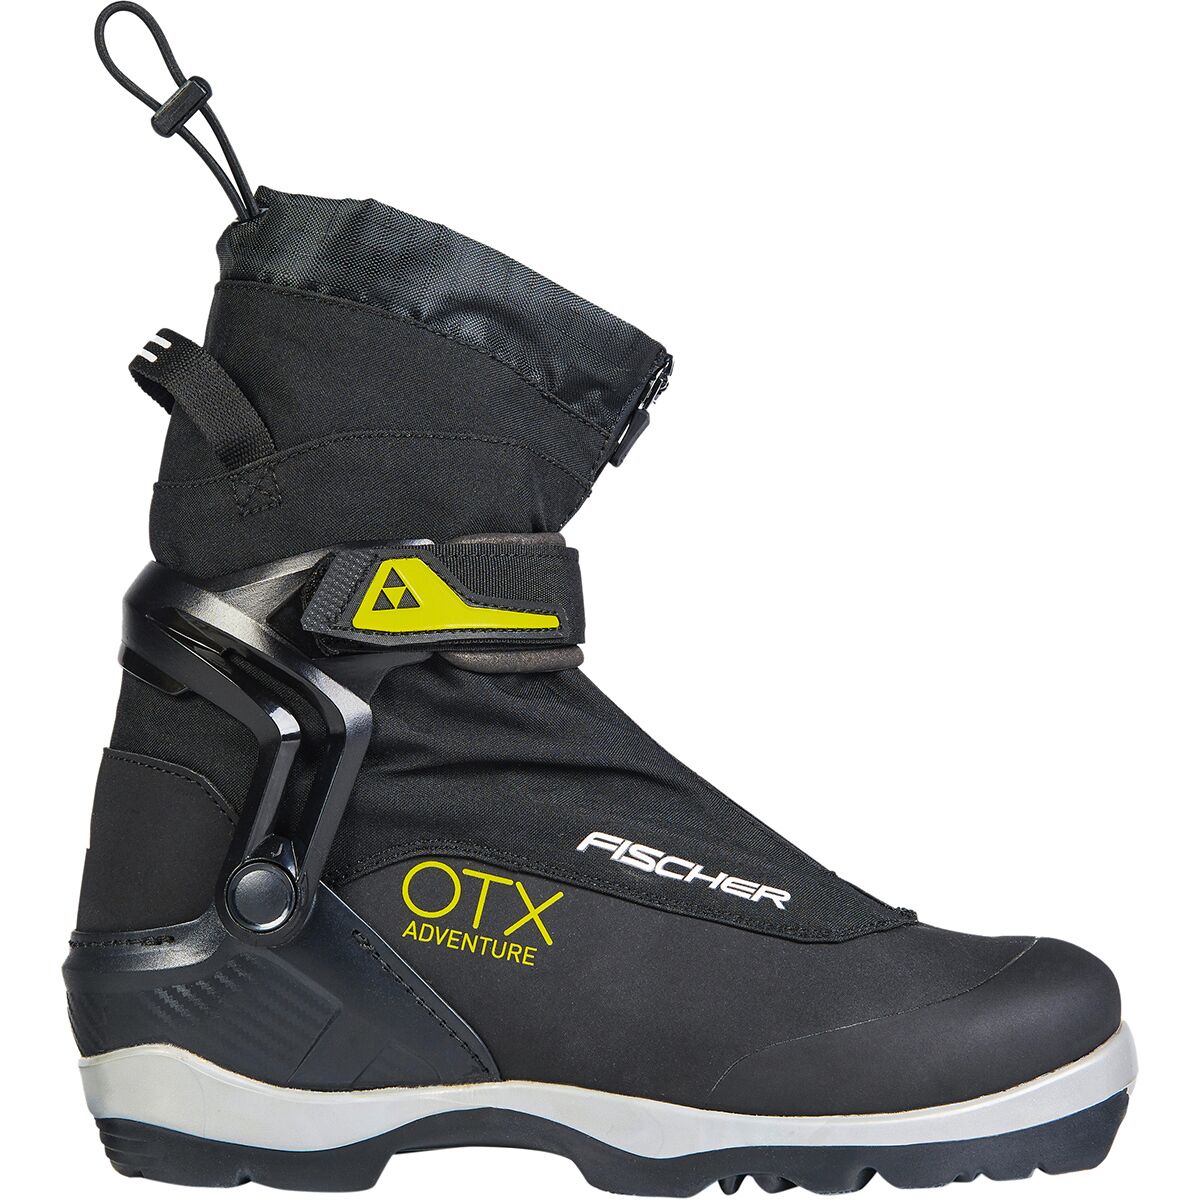 Fischer OTX Adventure BC Ski Boot - 2022